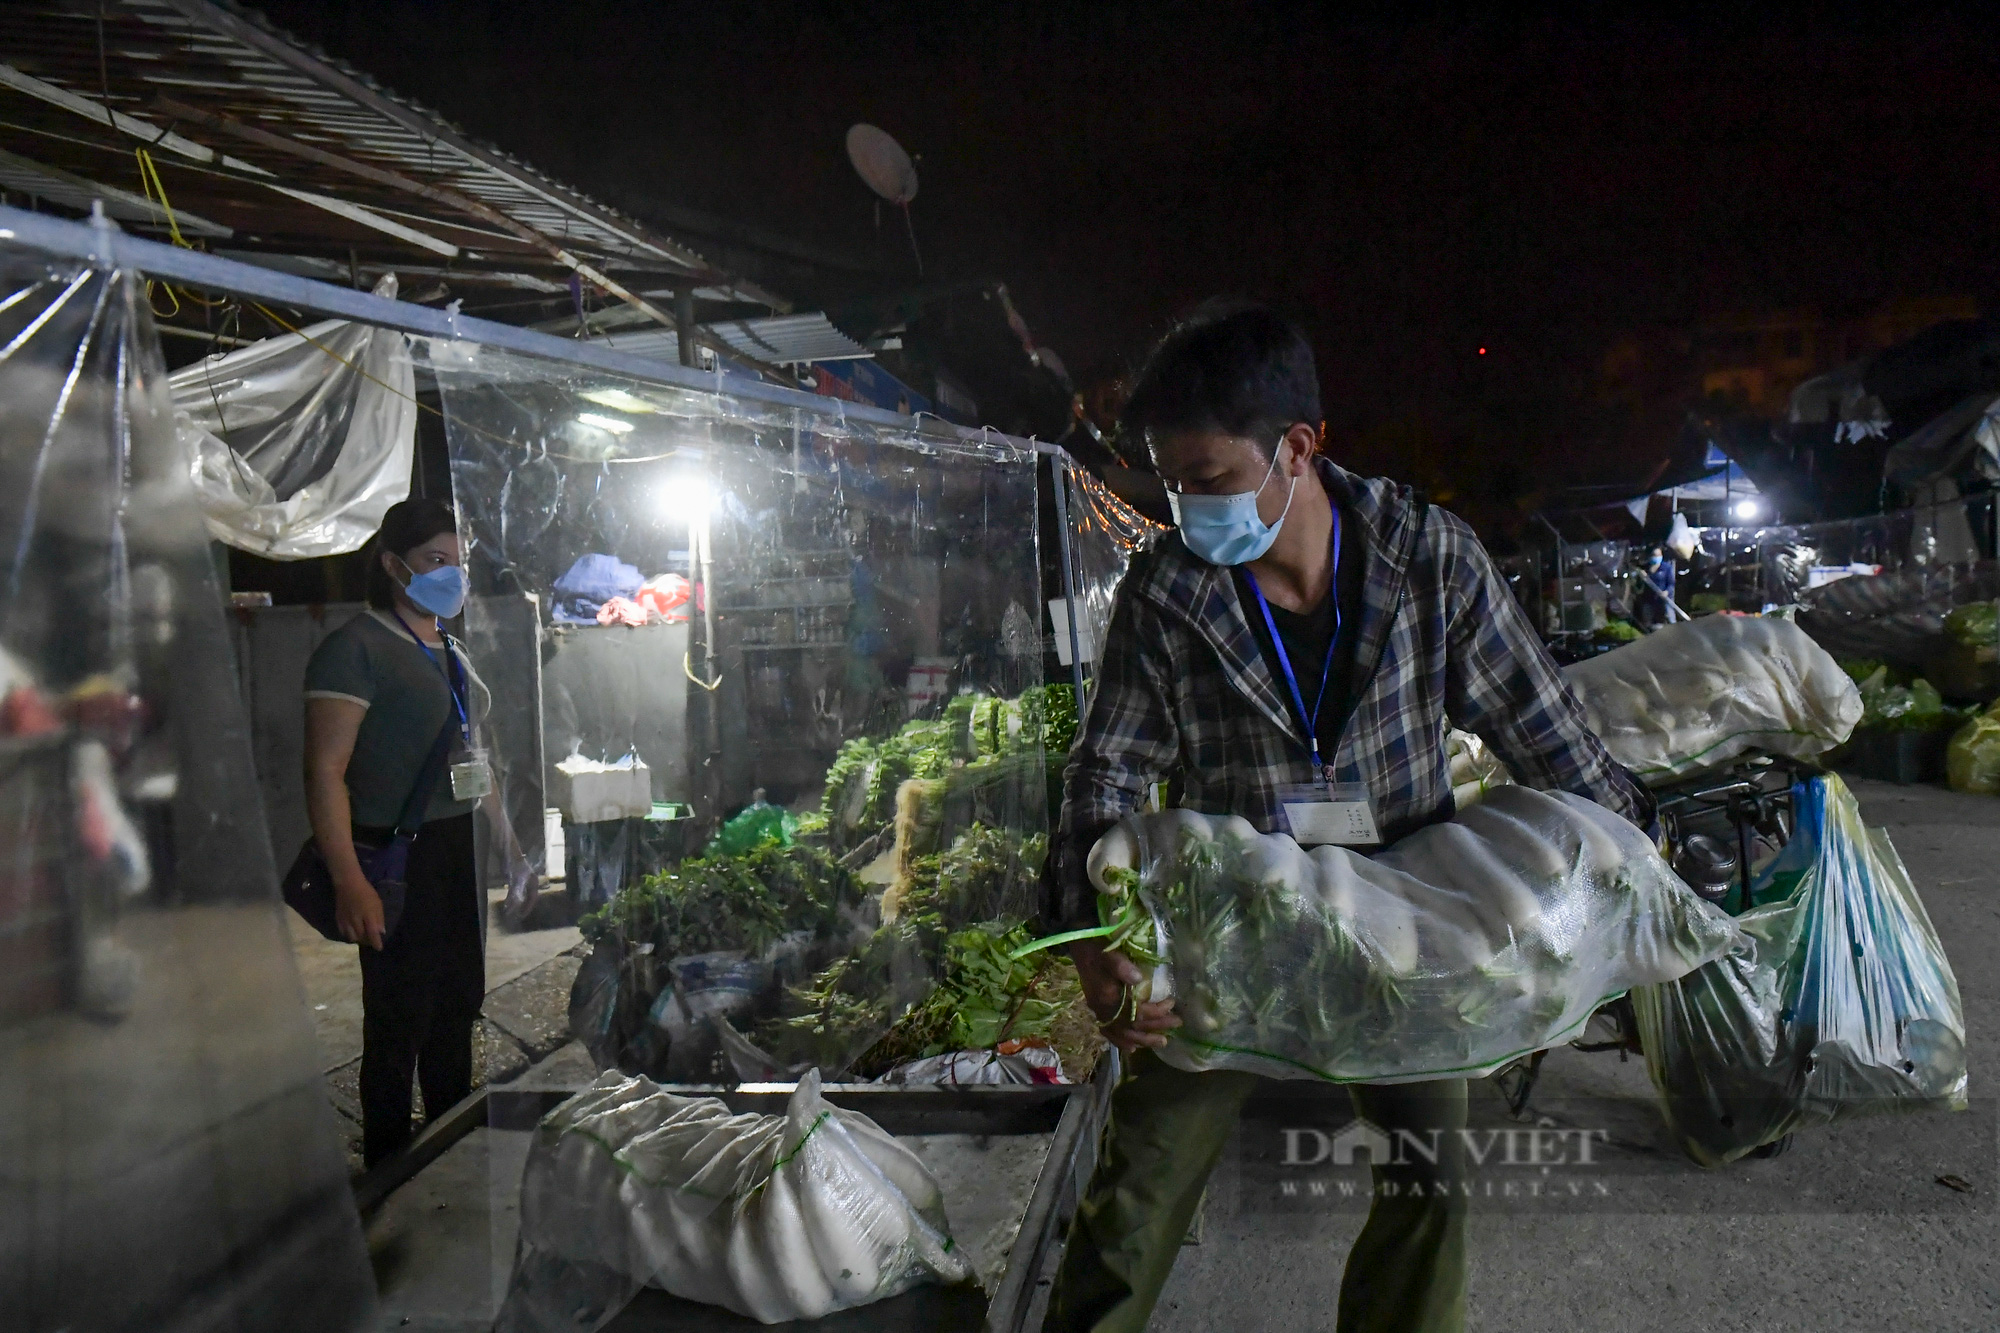 Hà Nội: Tiểu thương tất bật dọn hàng trong đêm khi chợ đầu mối phía Nam Hà Nội mở cửa trở lại  - Ảnh 9.